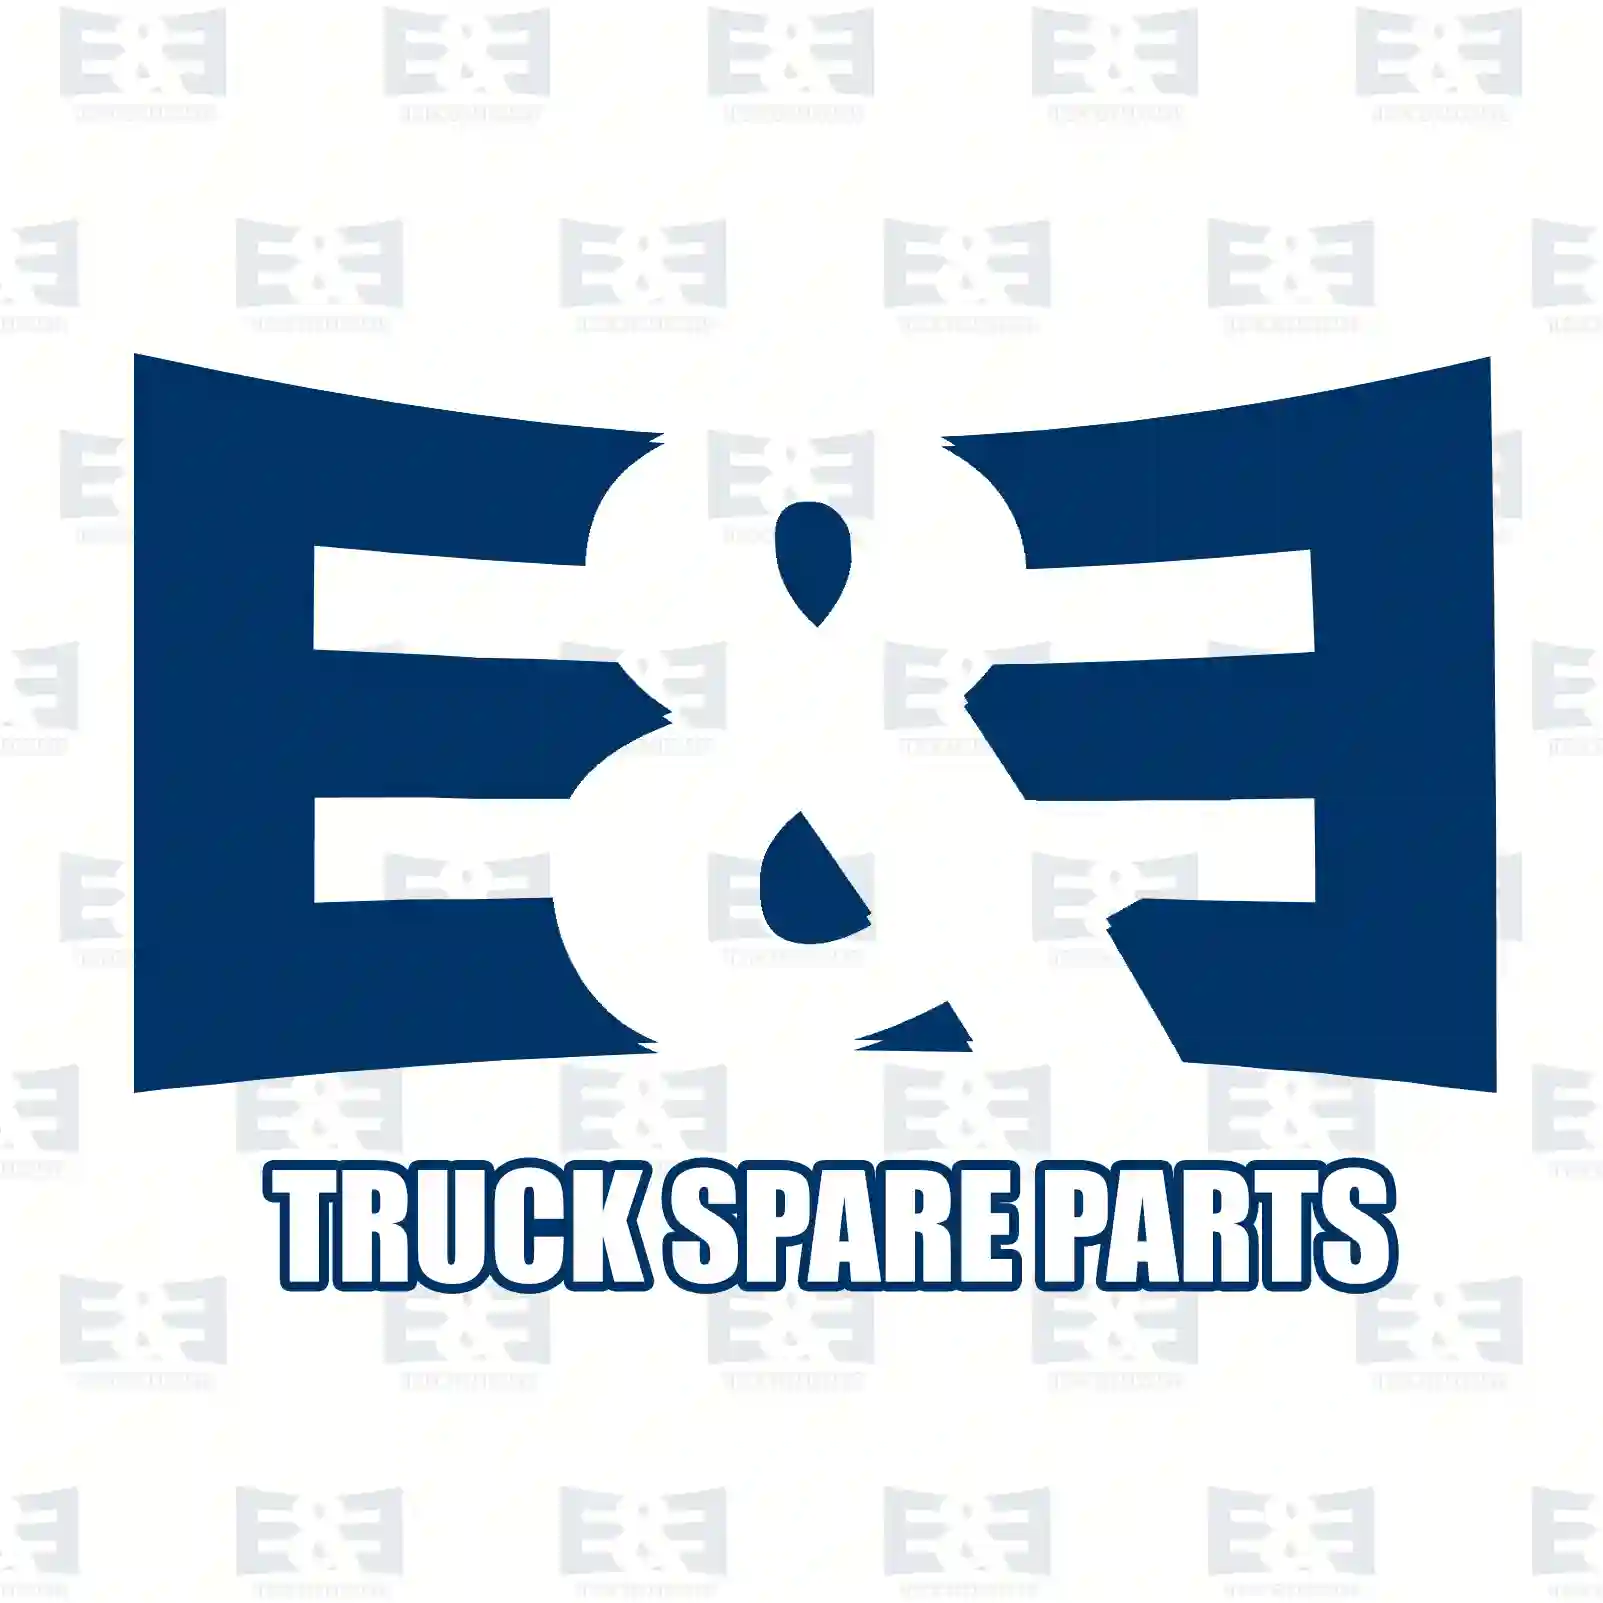 Belt tensioner, 2E2202093, 0002300410, ZG00949-0008 ||  2E2202093 E&E Truck Spare Parts | Truck Spare Parts, Auotomotive Spare Parts Belt tensioner, 2E2202093, 0002300410, ZG00949-0008 ||  2E2202093 E&E Truck Spare Parts | Truck Spare Parts, Auotomotive Spare Parts